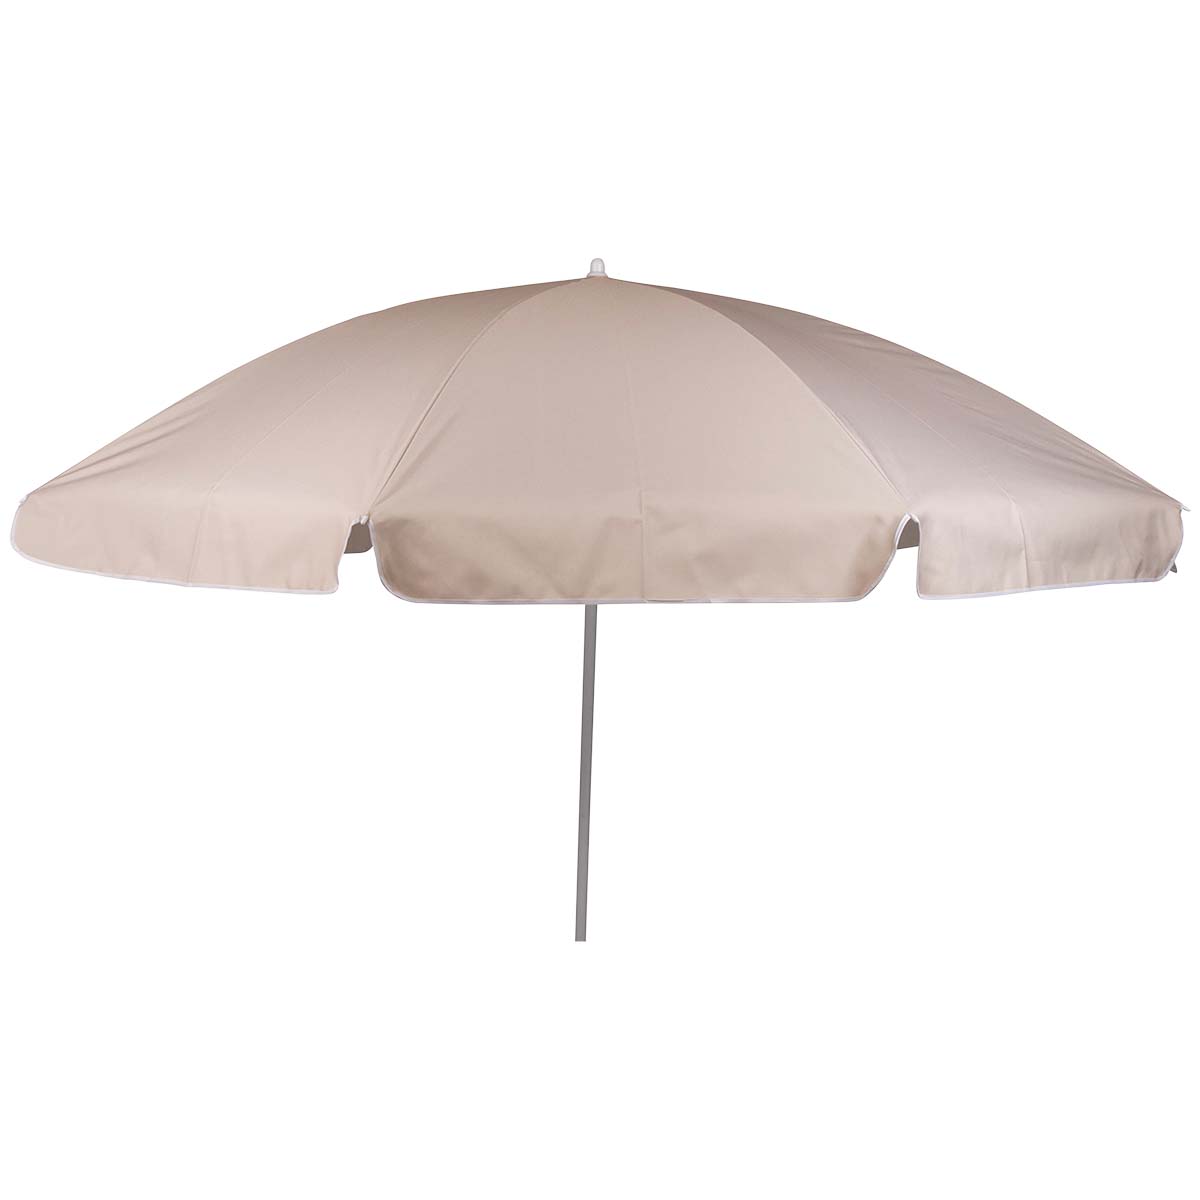 7267246 Een stevige parasol met stalen frame. Het 160 gr/m² polyester doek biedt bescherming tegen schadelijke zonnestraling. De steel is in hoogte verstelbaar en voorzien van een knikarm zodat het doek richting de zon kan worden gebogen. De steel van de parasol heeft een diameter van 25 millimeter.